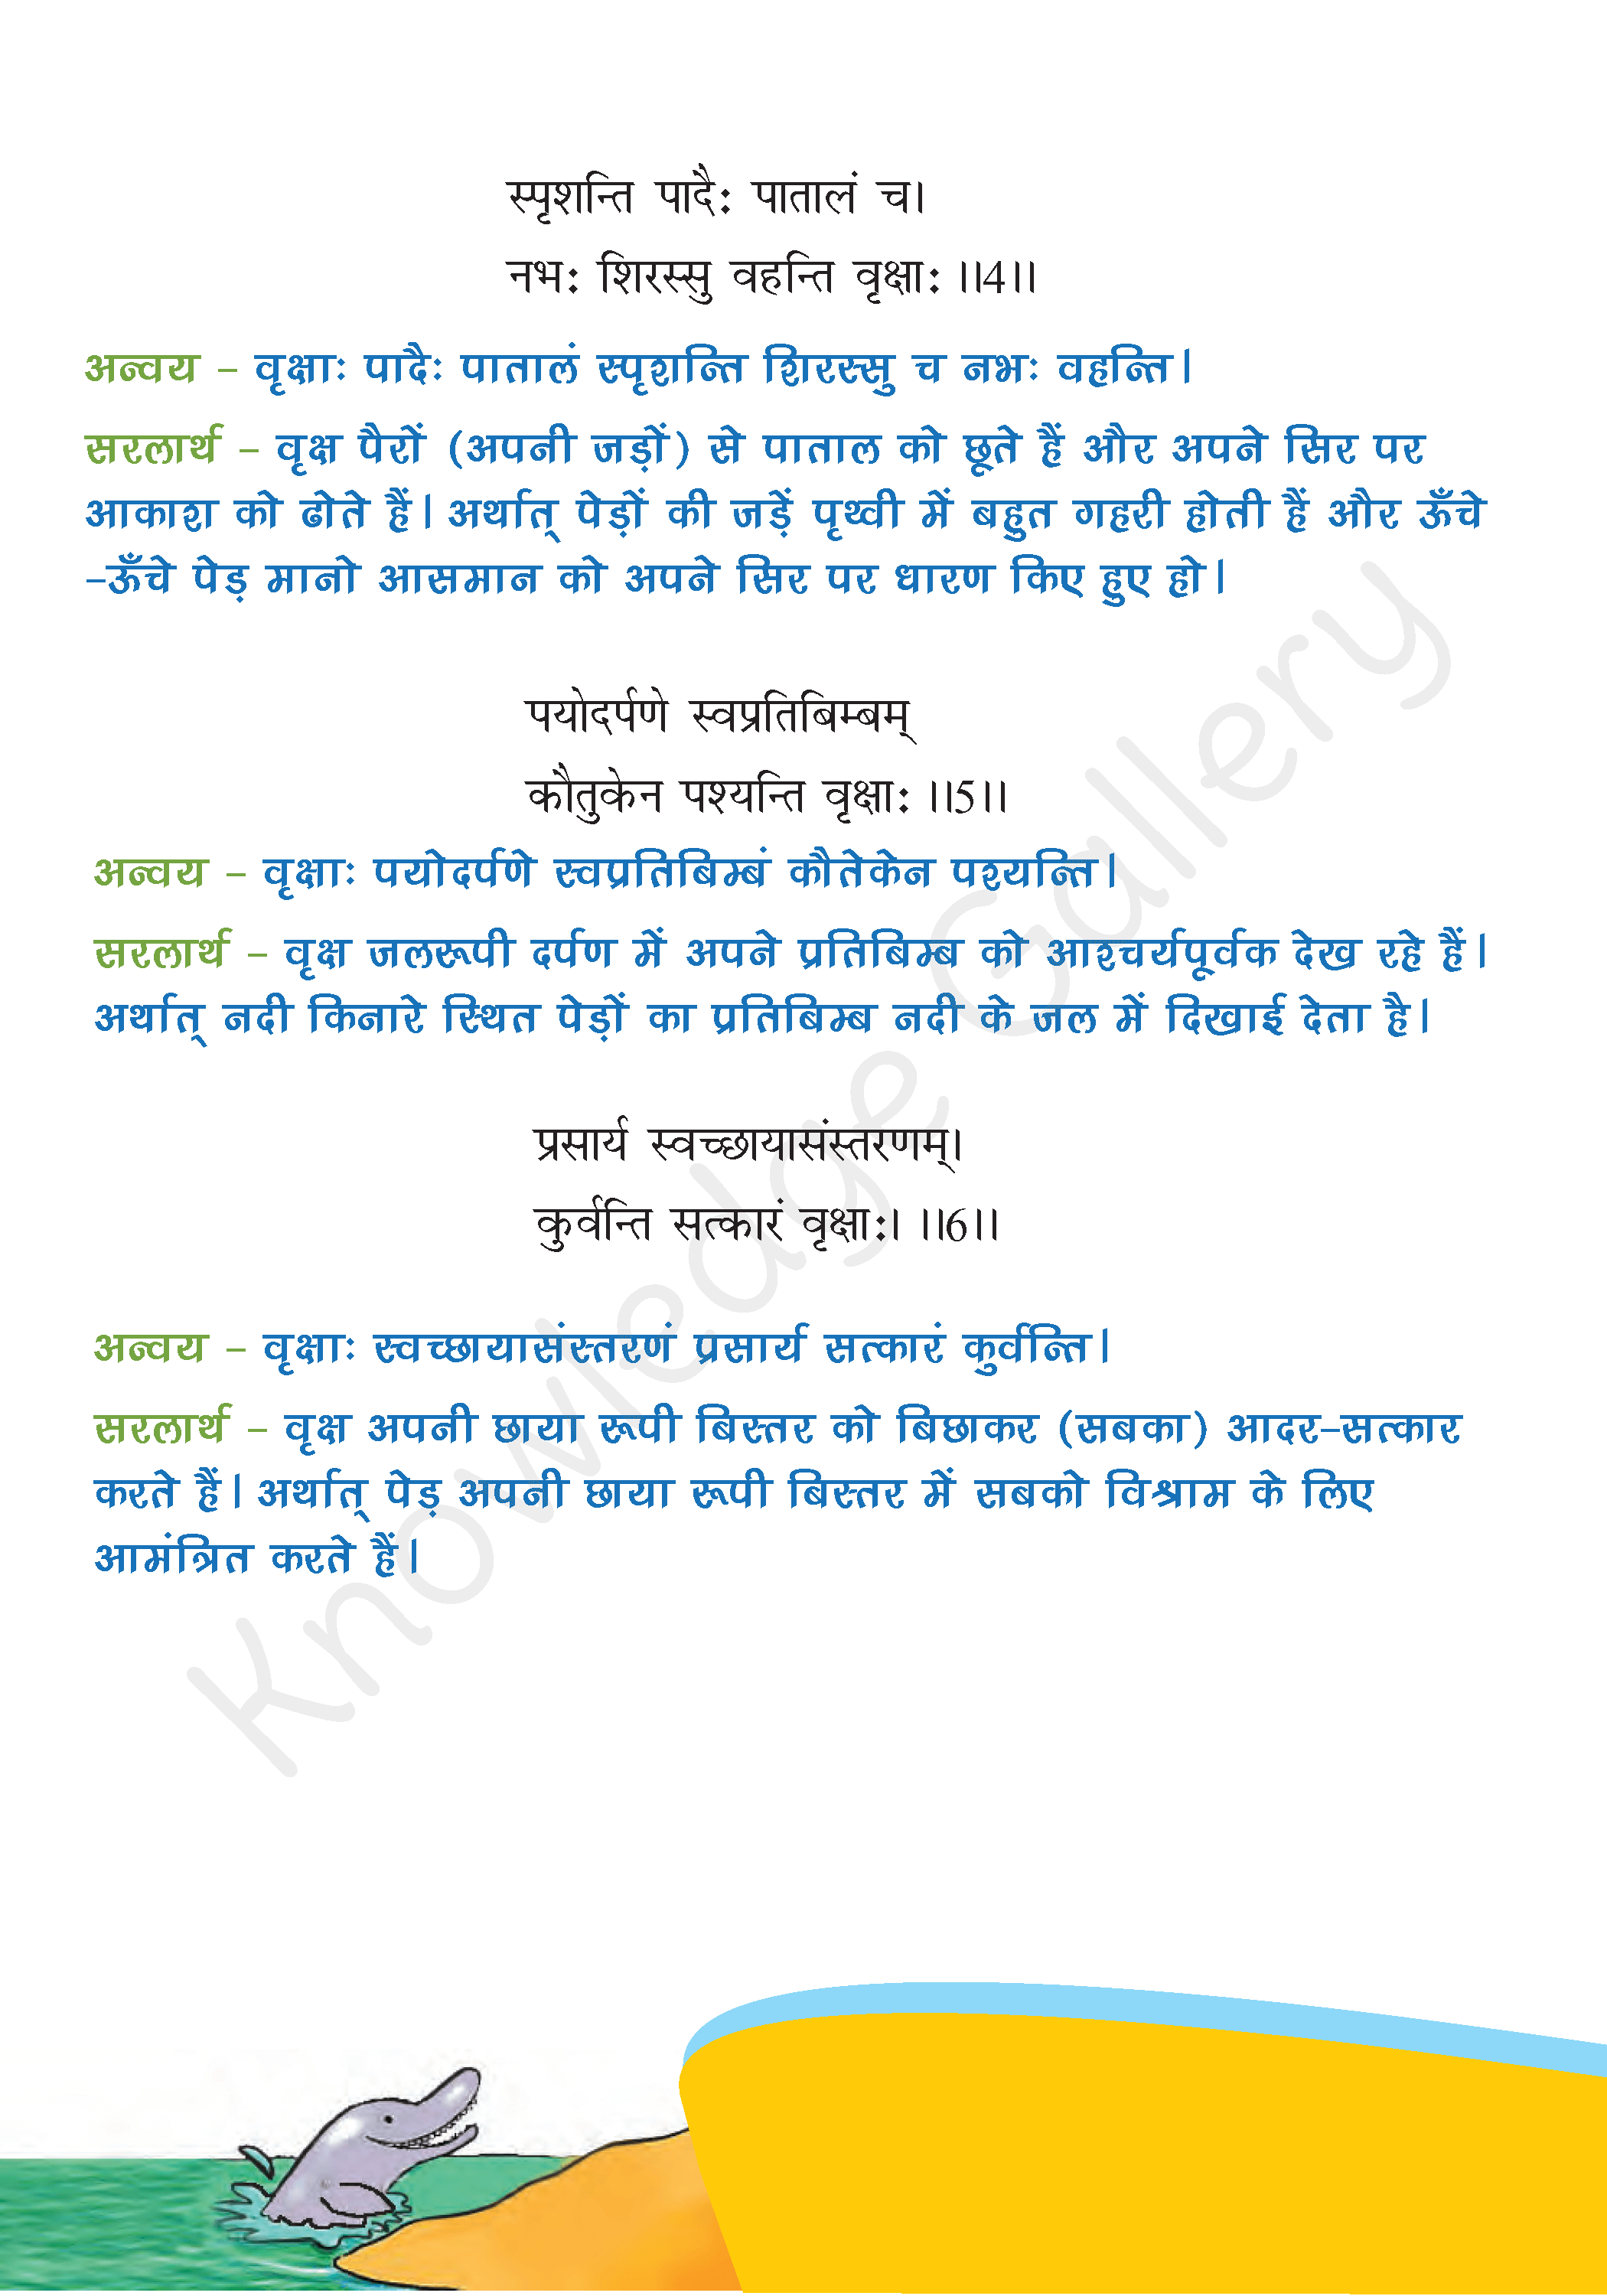 NCERT Solution For Class 6 Sanskrit Chapter 5 part 2